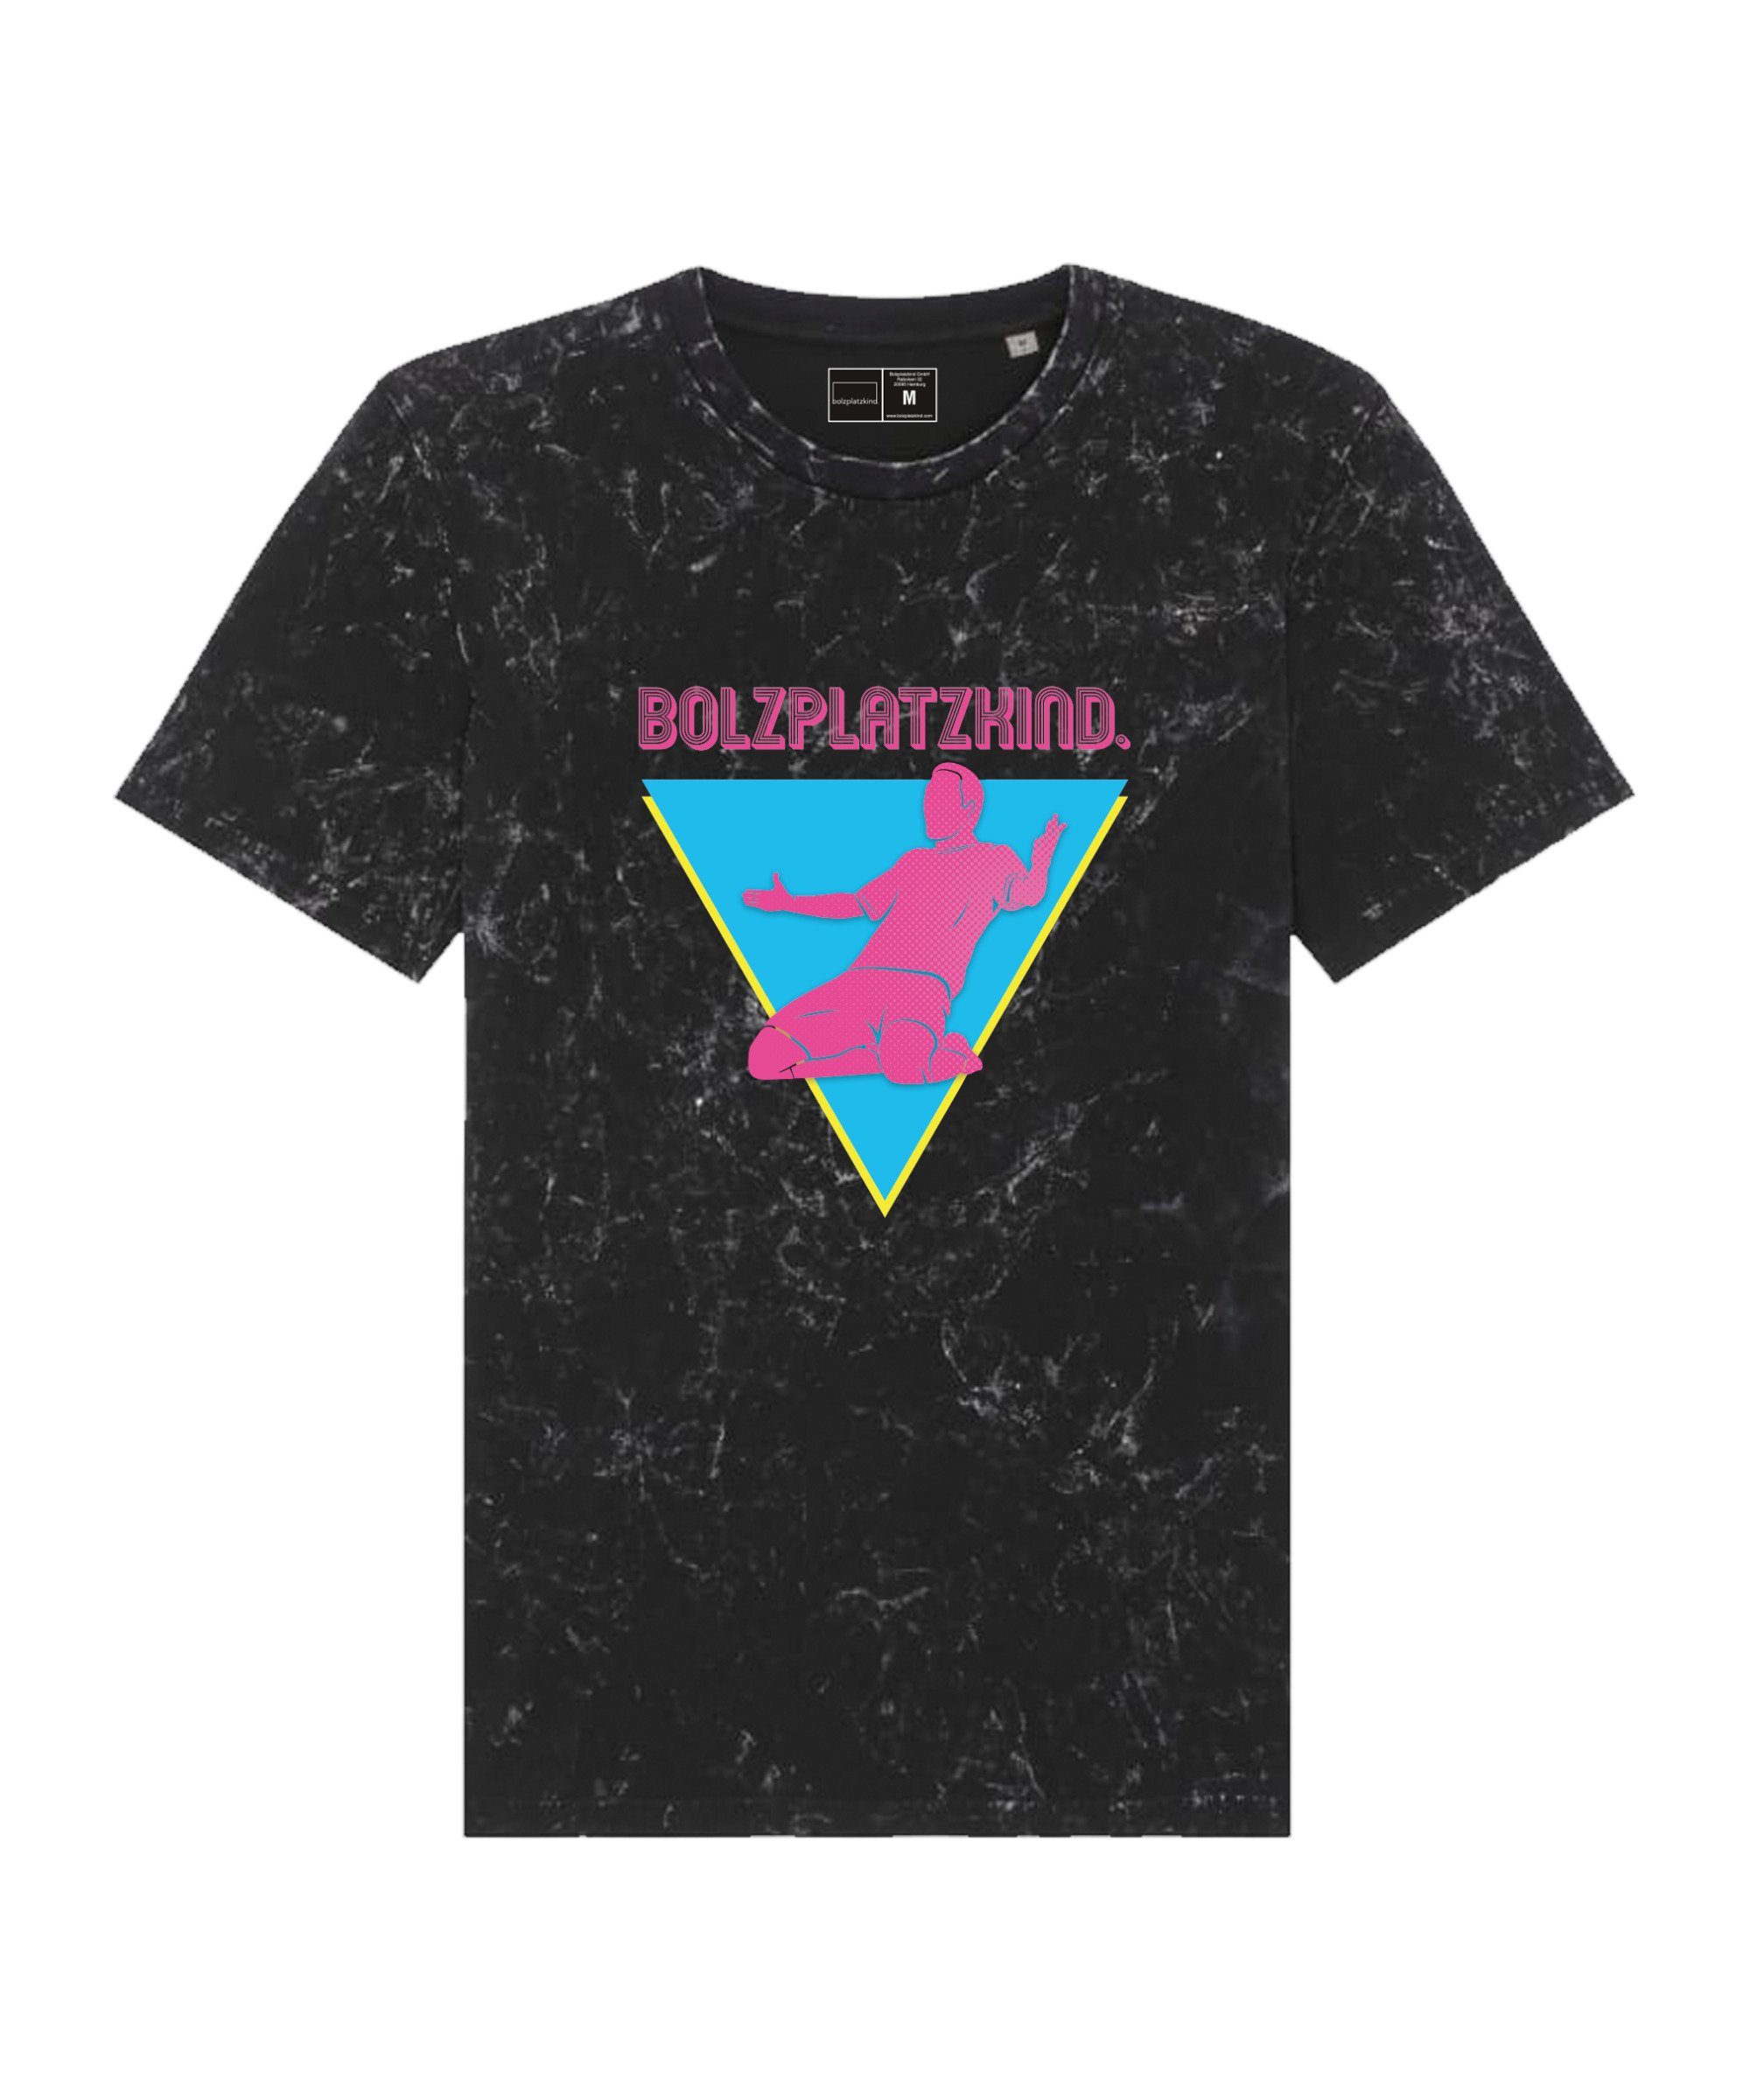 schwarzpinkblau Straddle default "80er T-Shirt Bolzplatzkind Jahre" T-Shirt